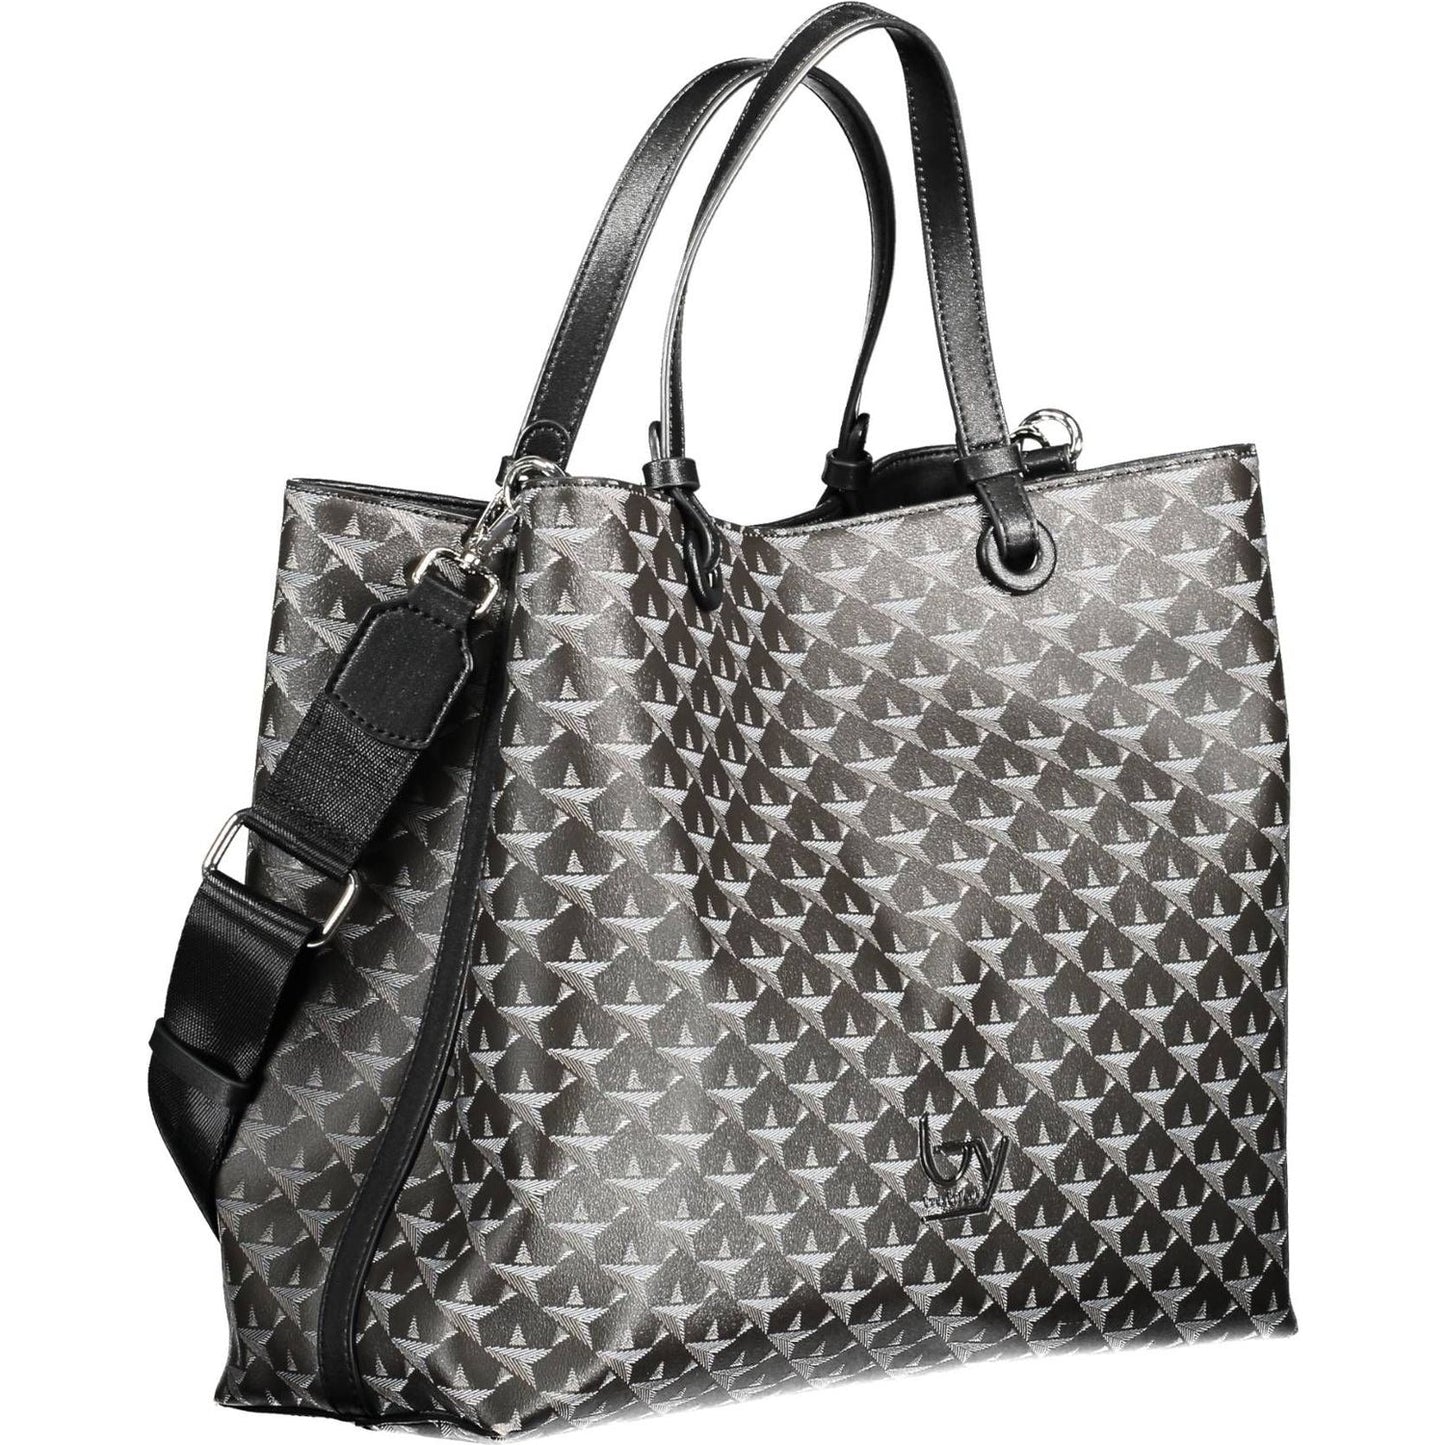 BYBLOS | Chic Black Two-Handle Bag with Contrasting Details| McRichard Designer Brands   